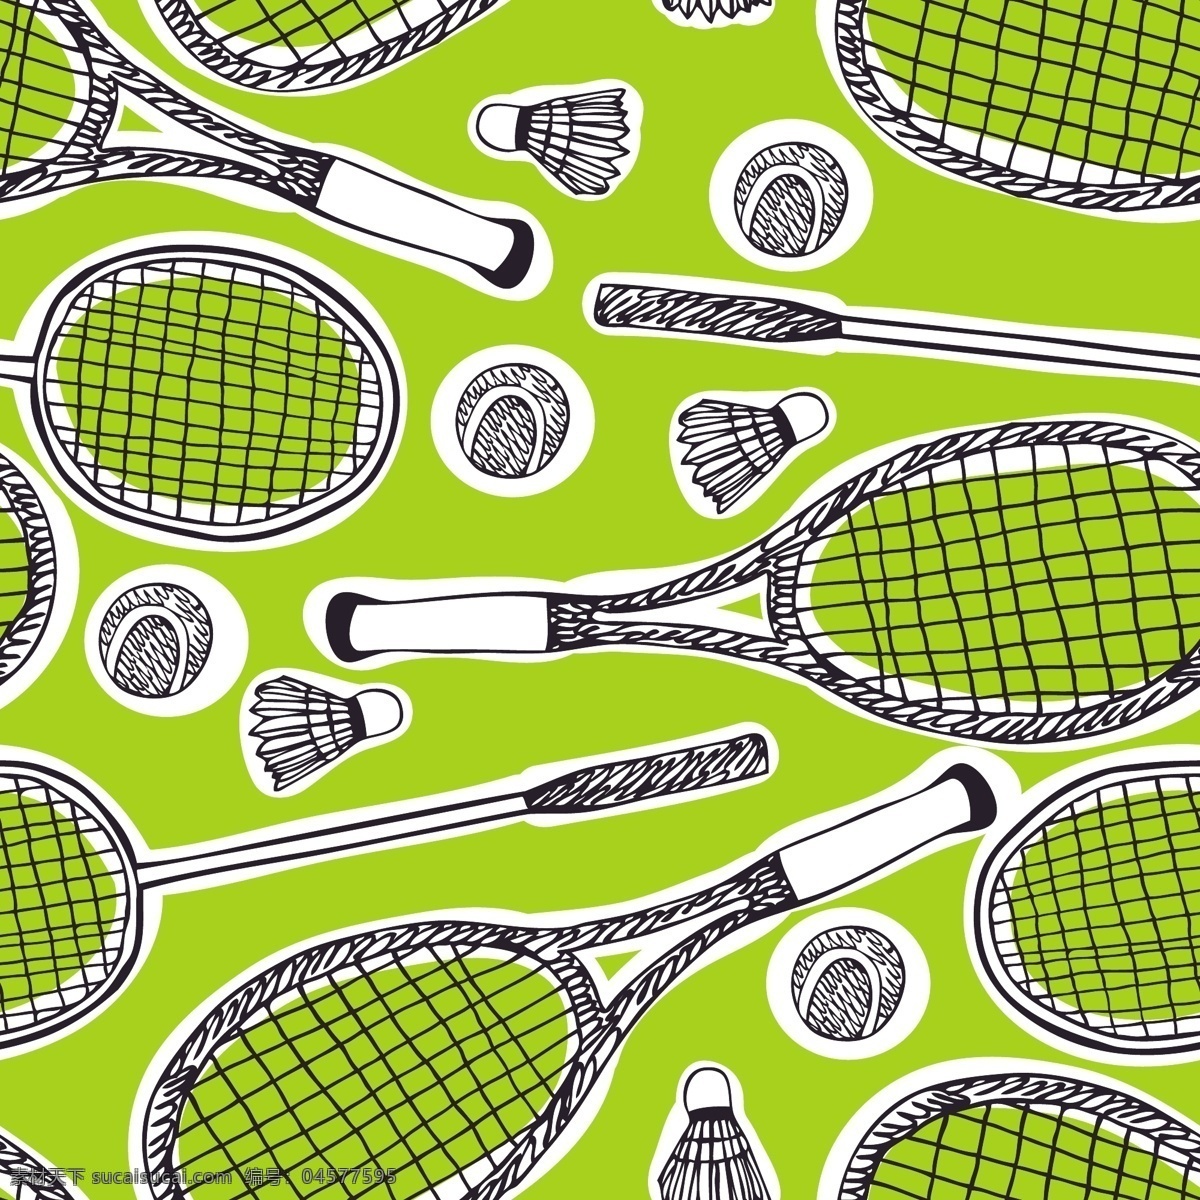 羽毛球 手绘 体育 体育用品 体育运动 文化艺术 矢量 模板下载